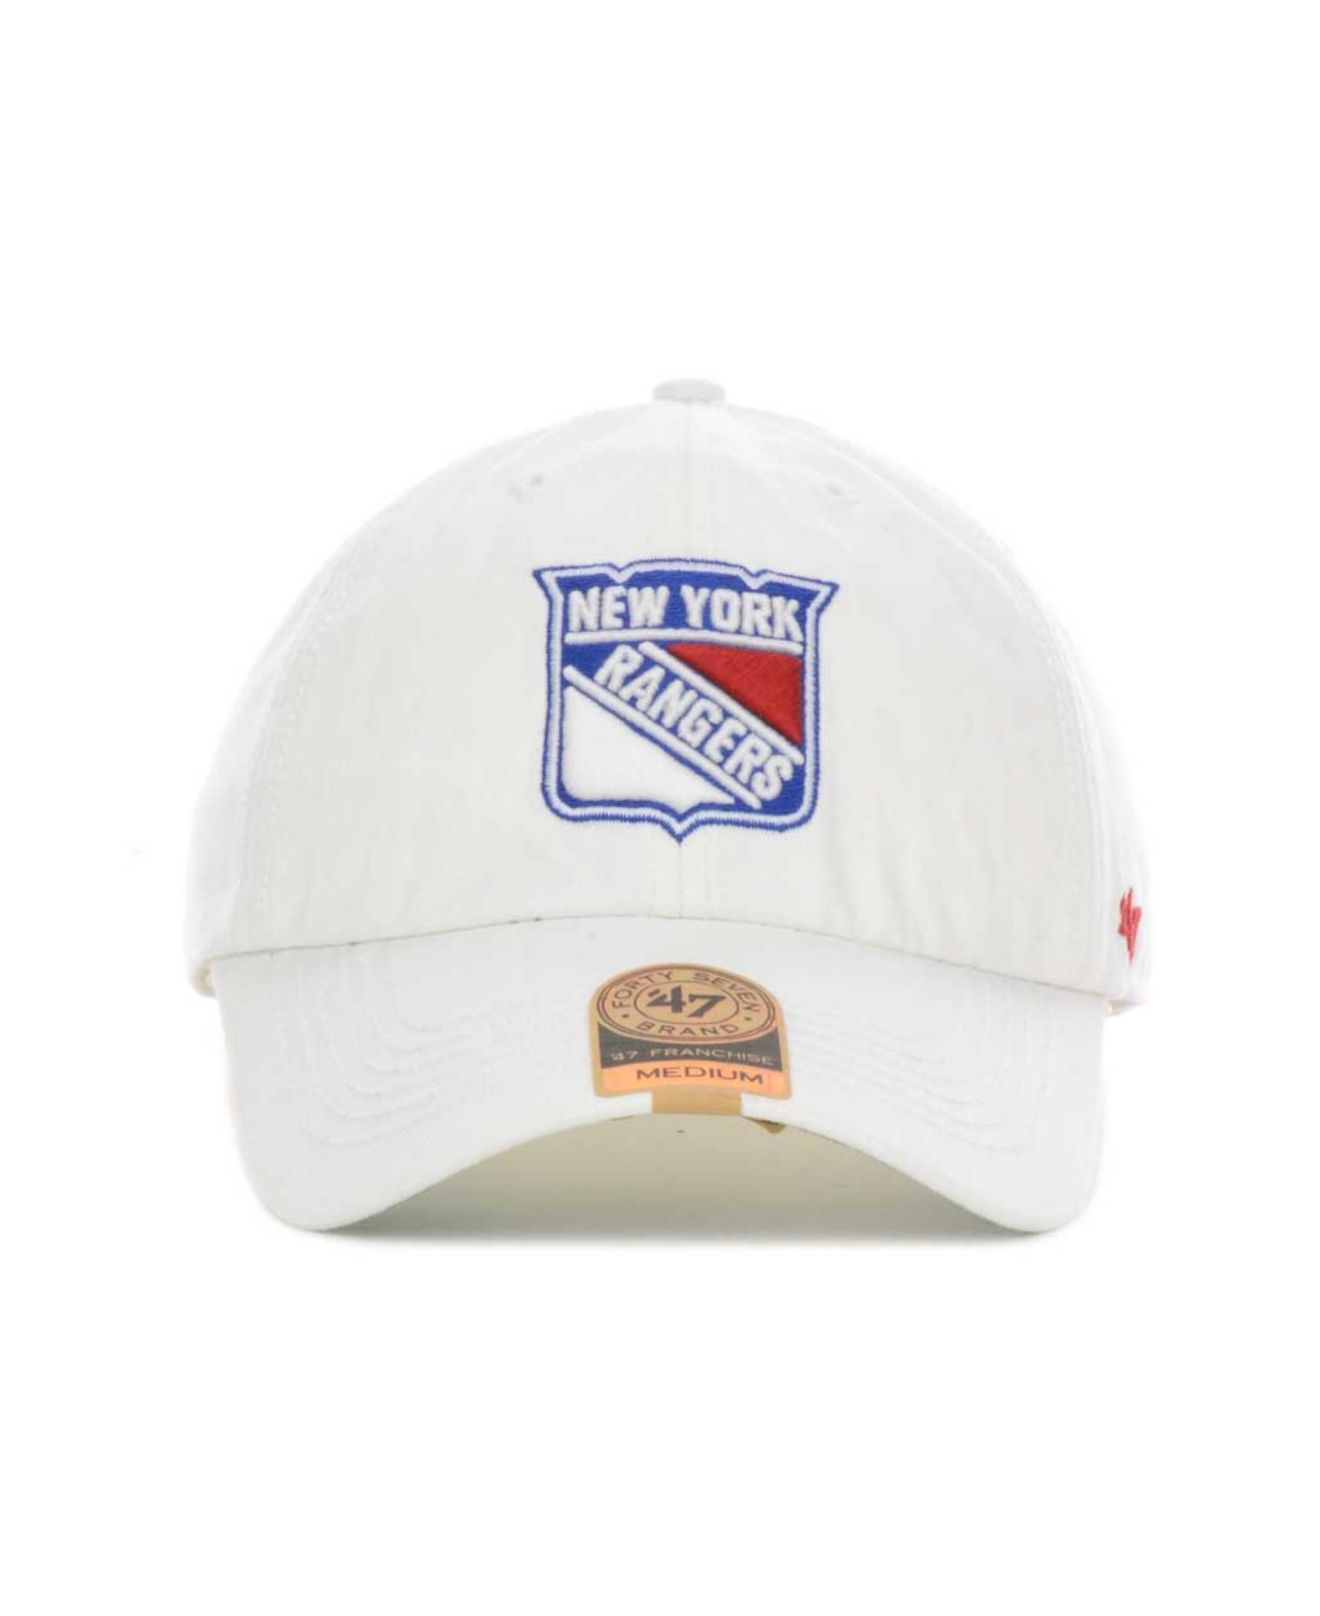 white ny rangers hat